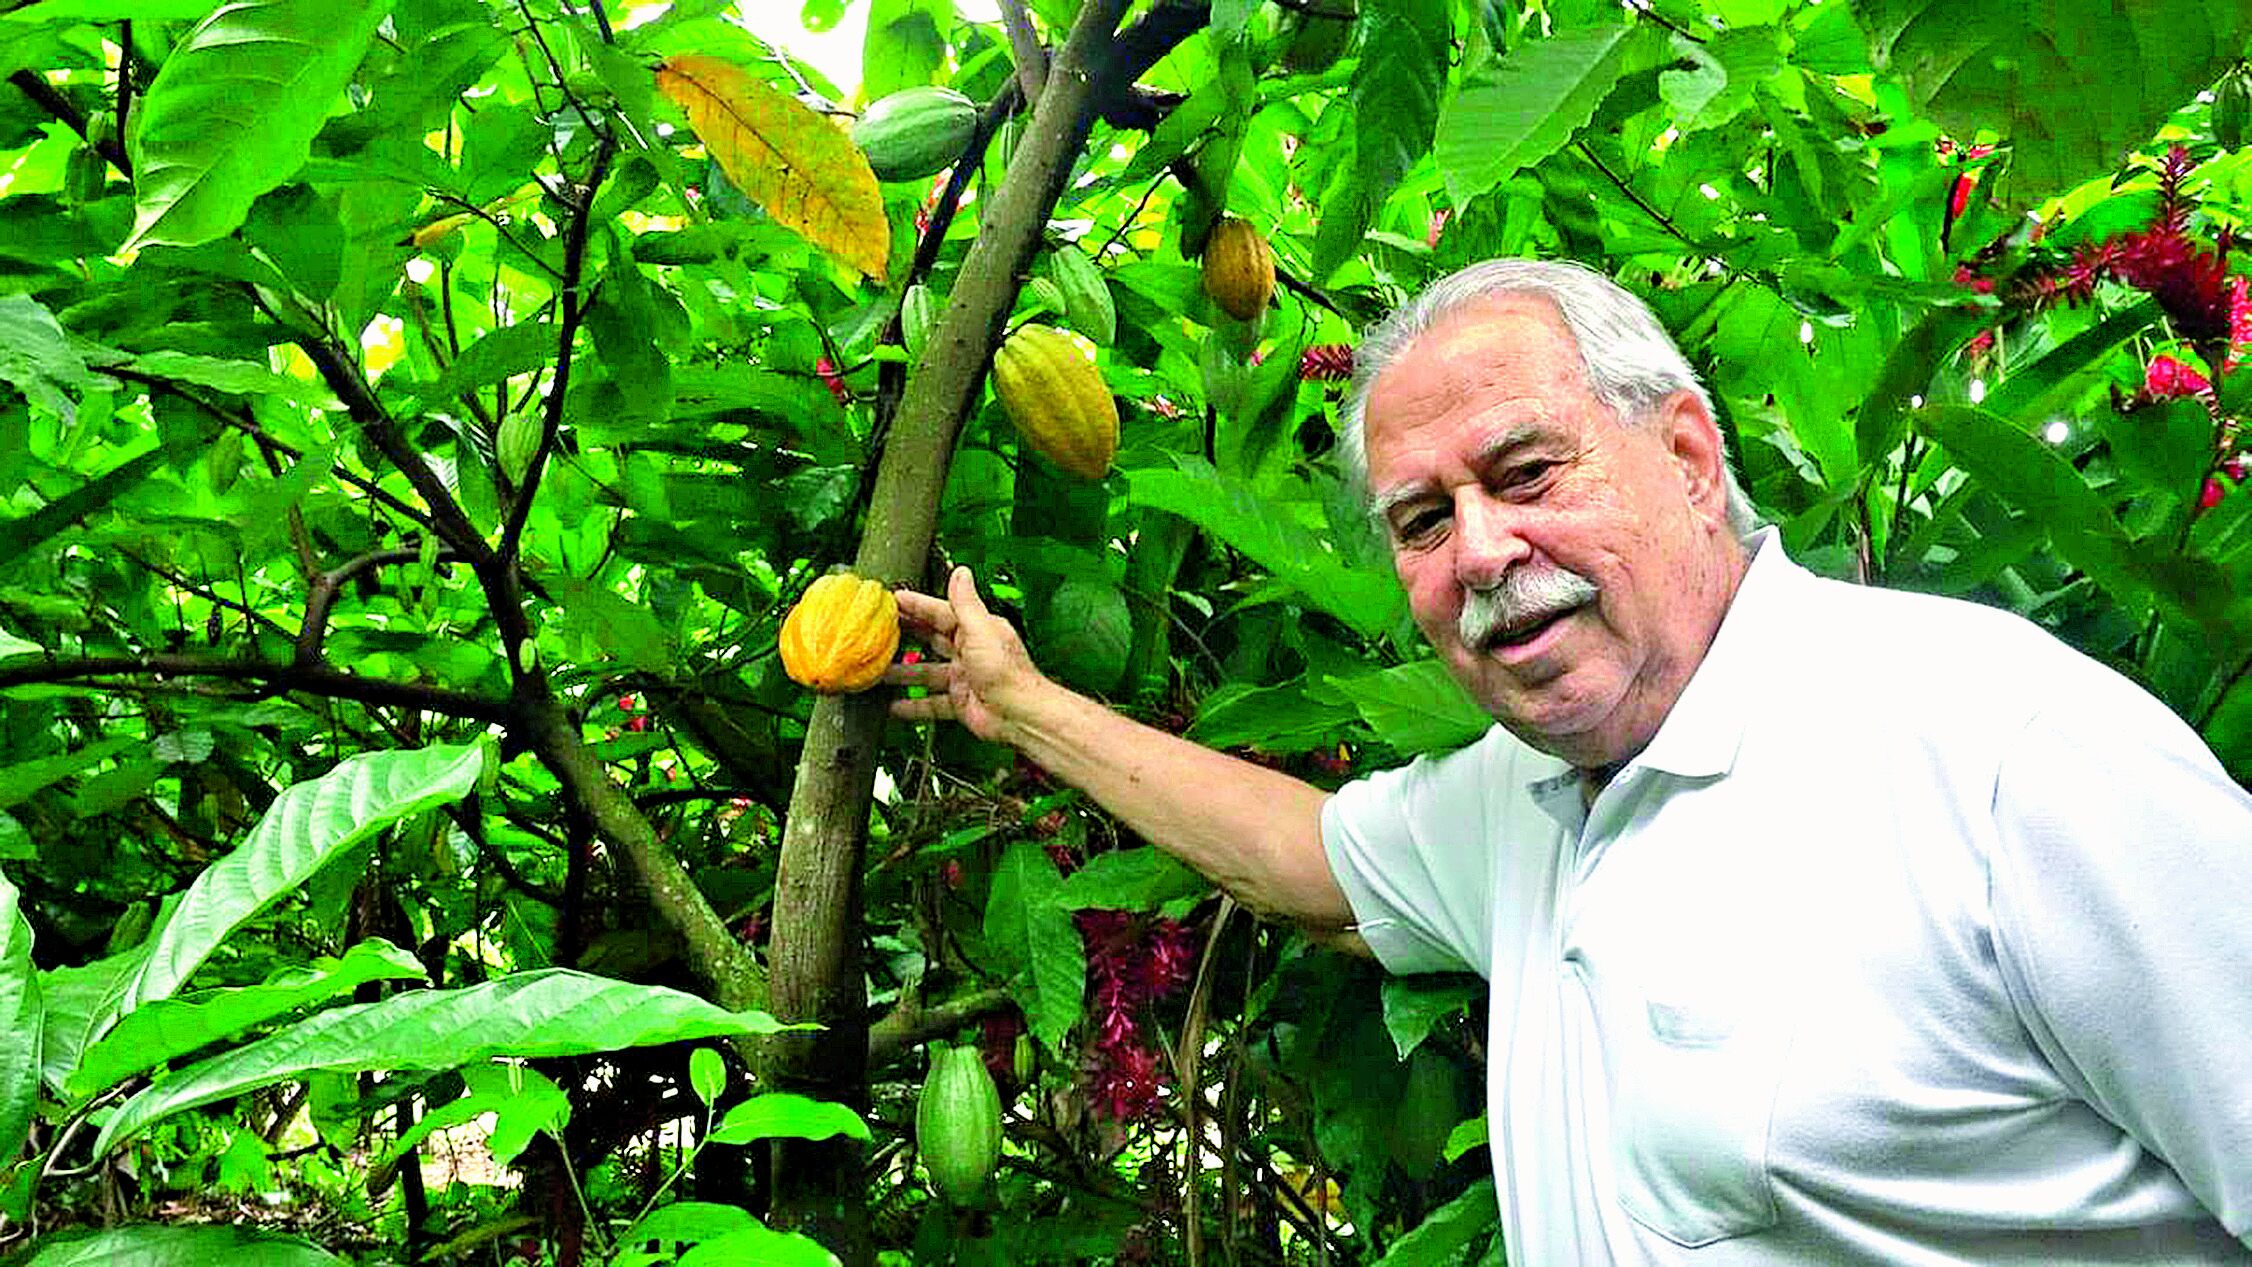 Giovanni Queiroz destaca os principais produtos do agronegócio paraense, que é exportado, como o cacau